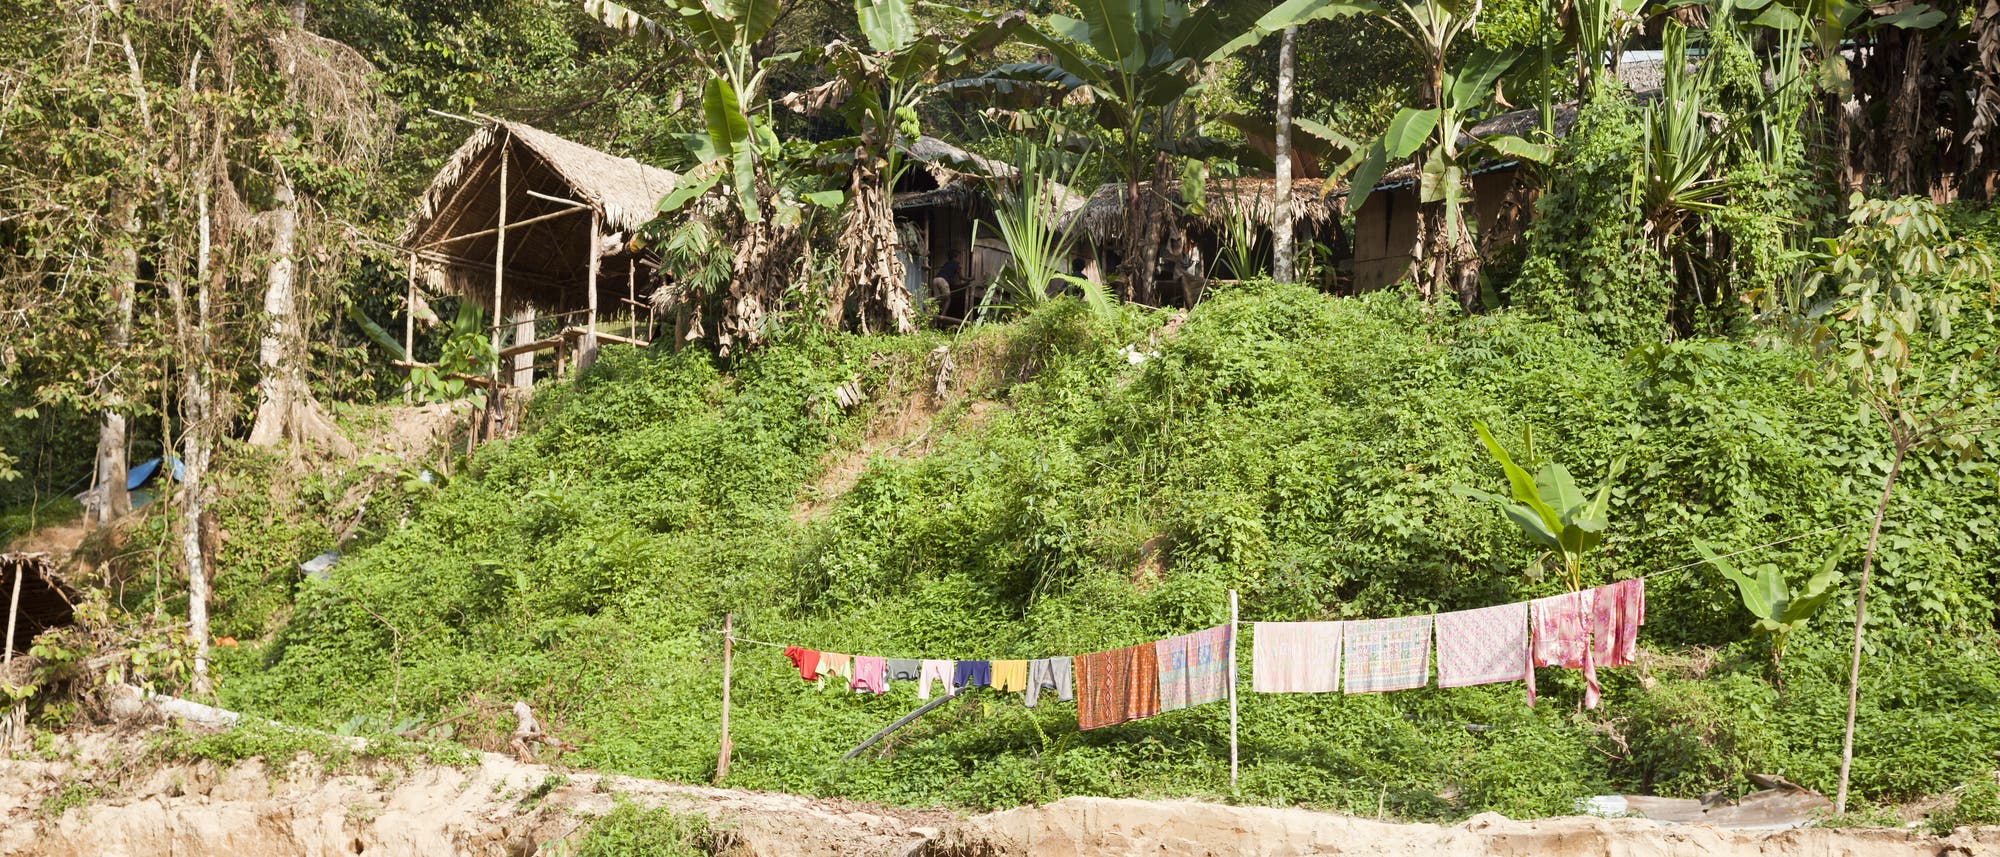 Blick auf eine Siedlung der Orang Asil, einer Volksgruppe in Malaysia, zu der auch die nicht sesshaften Batek gehören.